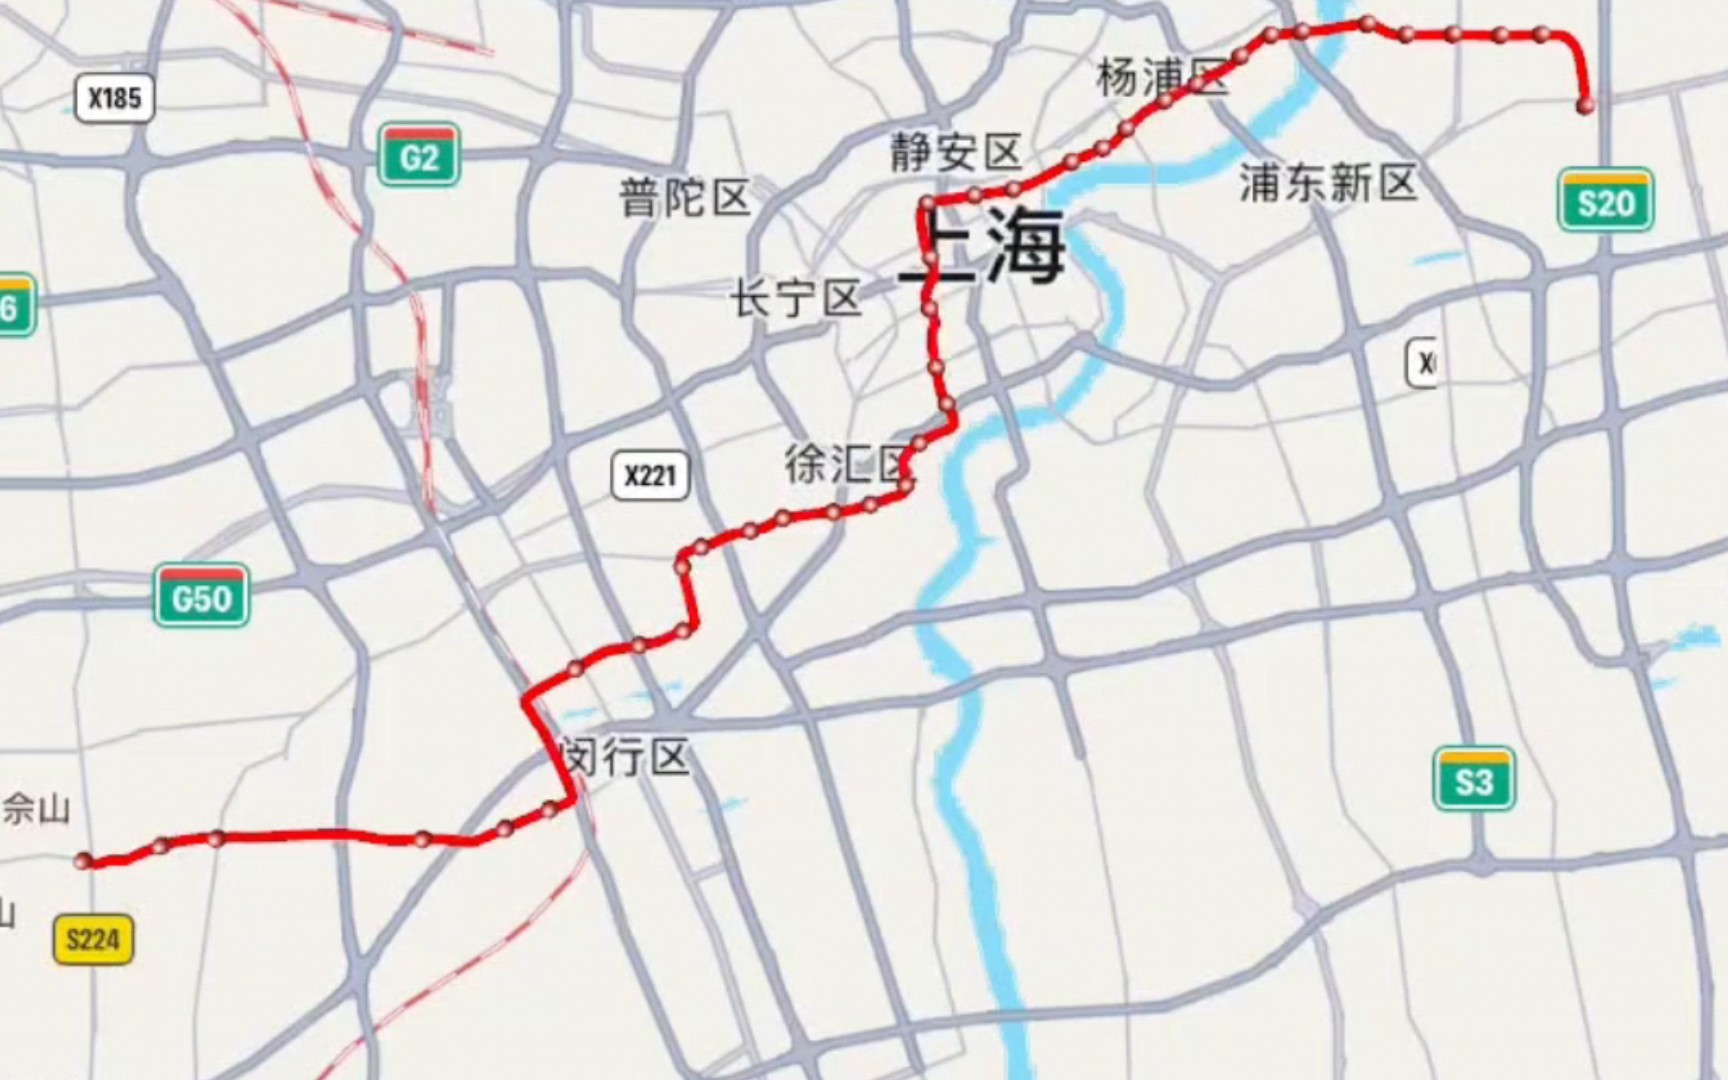 上海地铁12号线线路图片